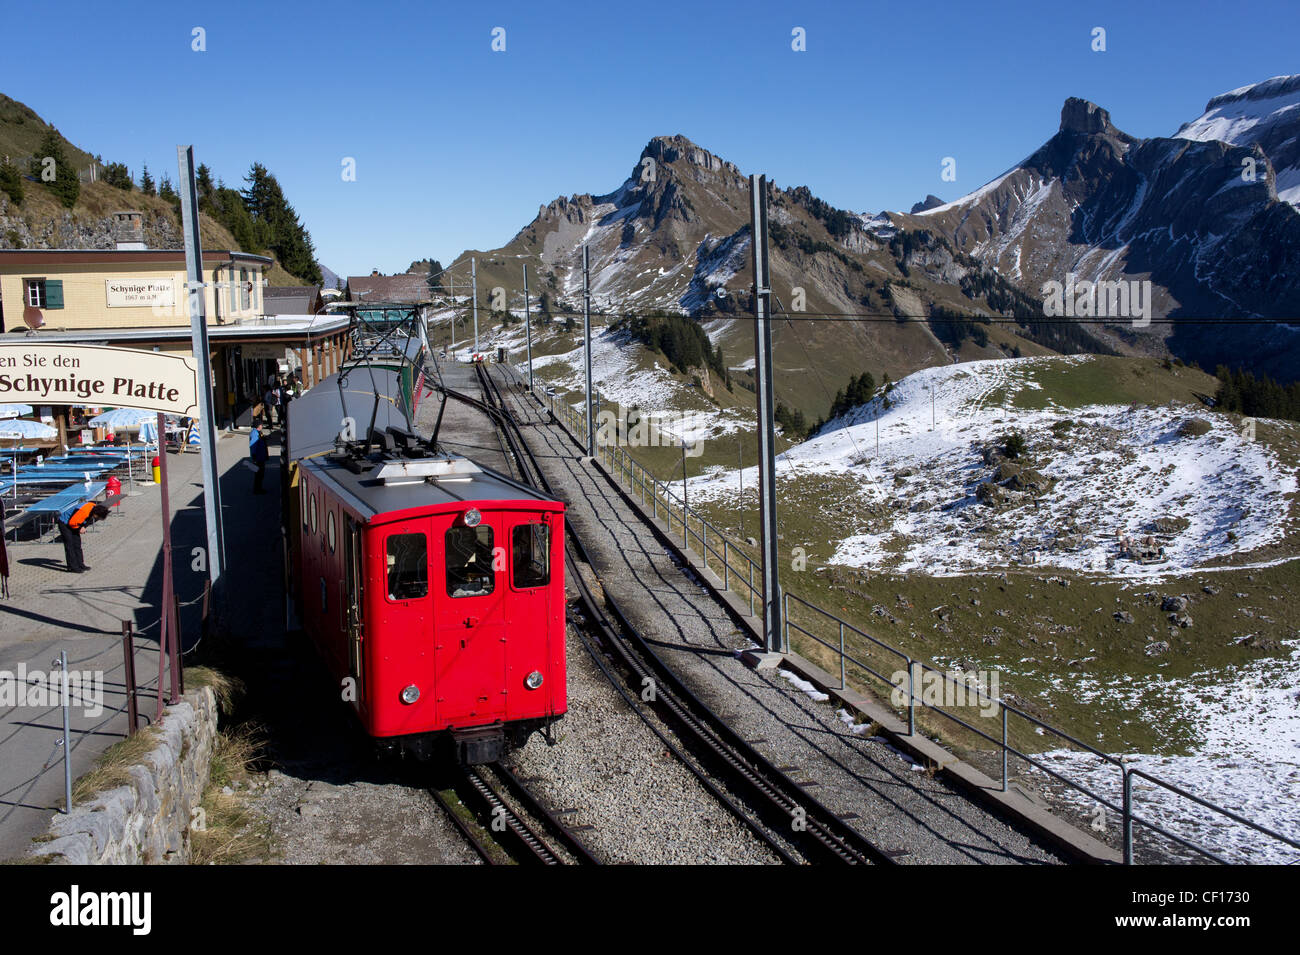 Bahnhof auf Schynige Platte, Berner Alpen, Schweiz Foto Stock